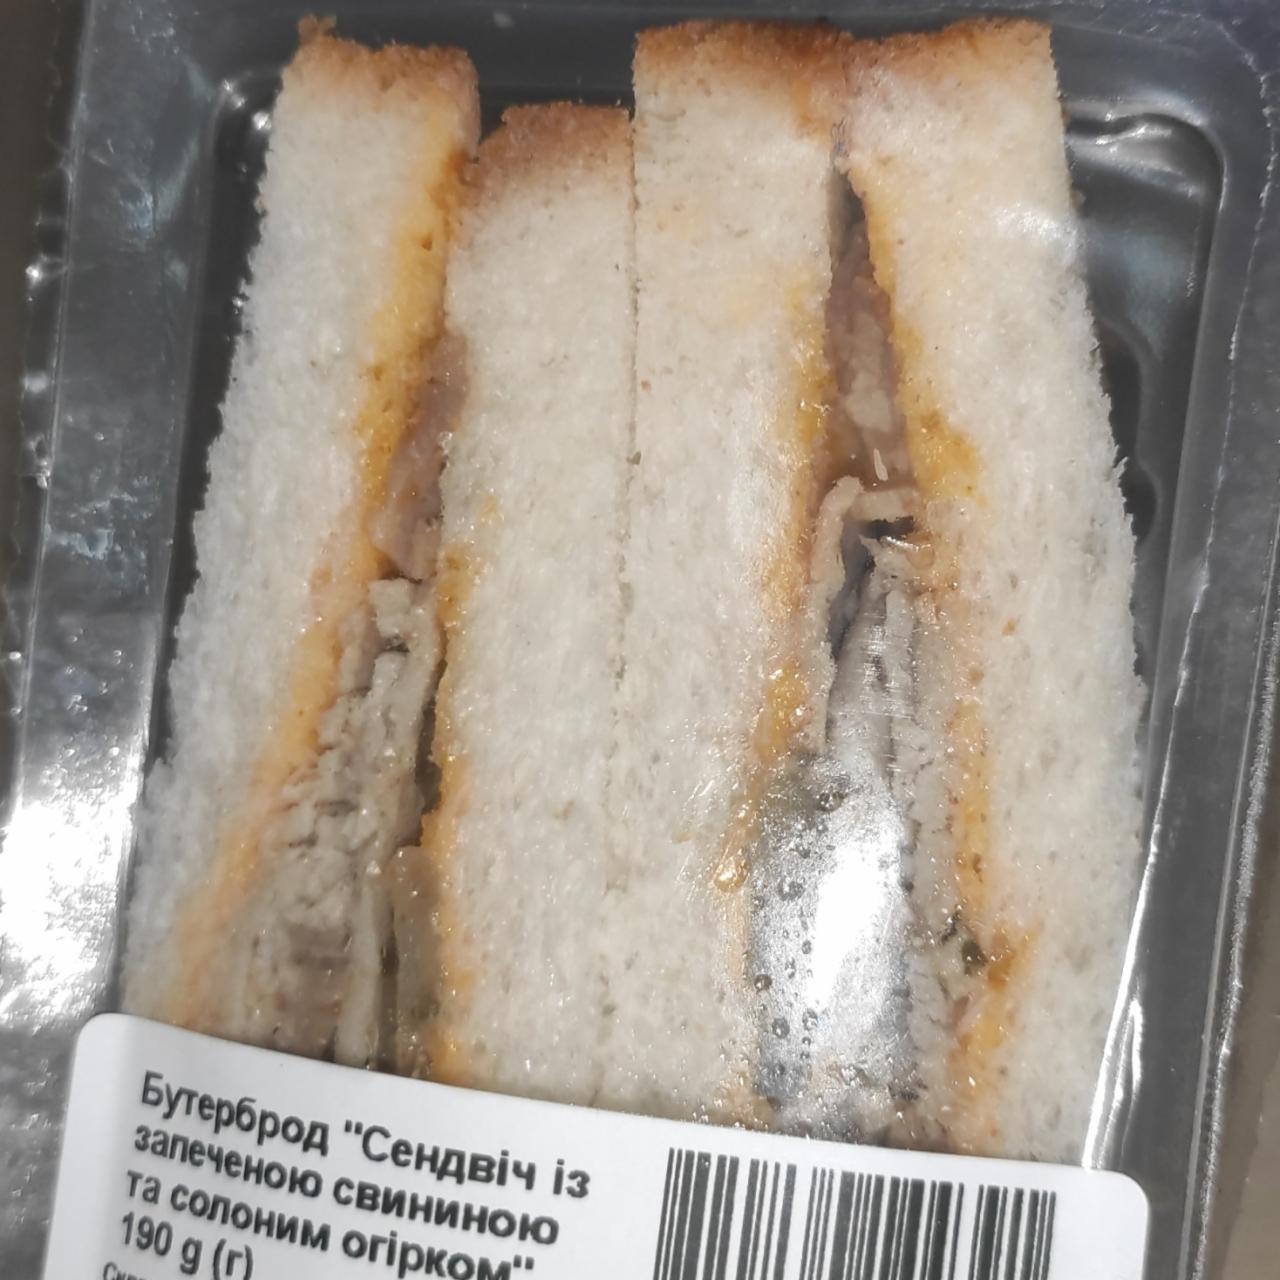 Фото - сендвич с запеченой свининой и соленым огурцом ТОВ ДЖИ ЕФ ЕС